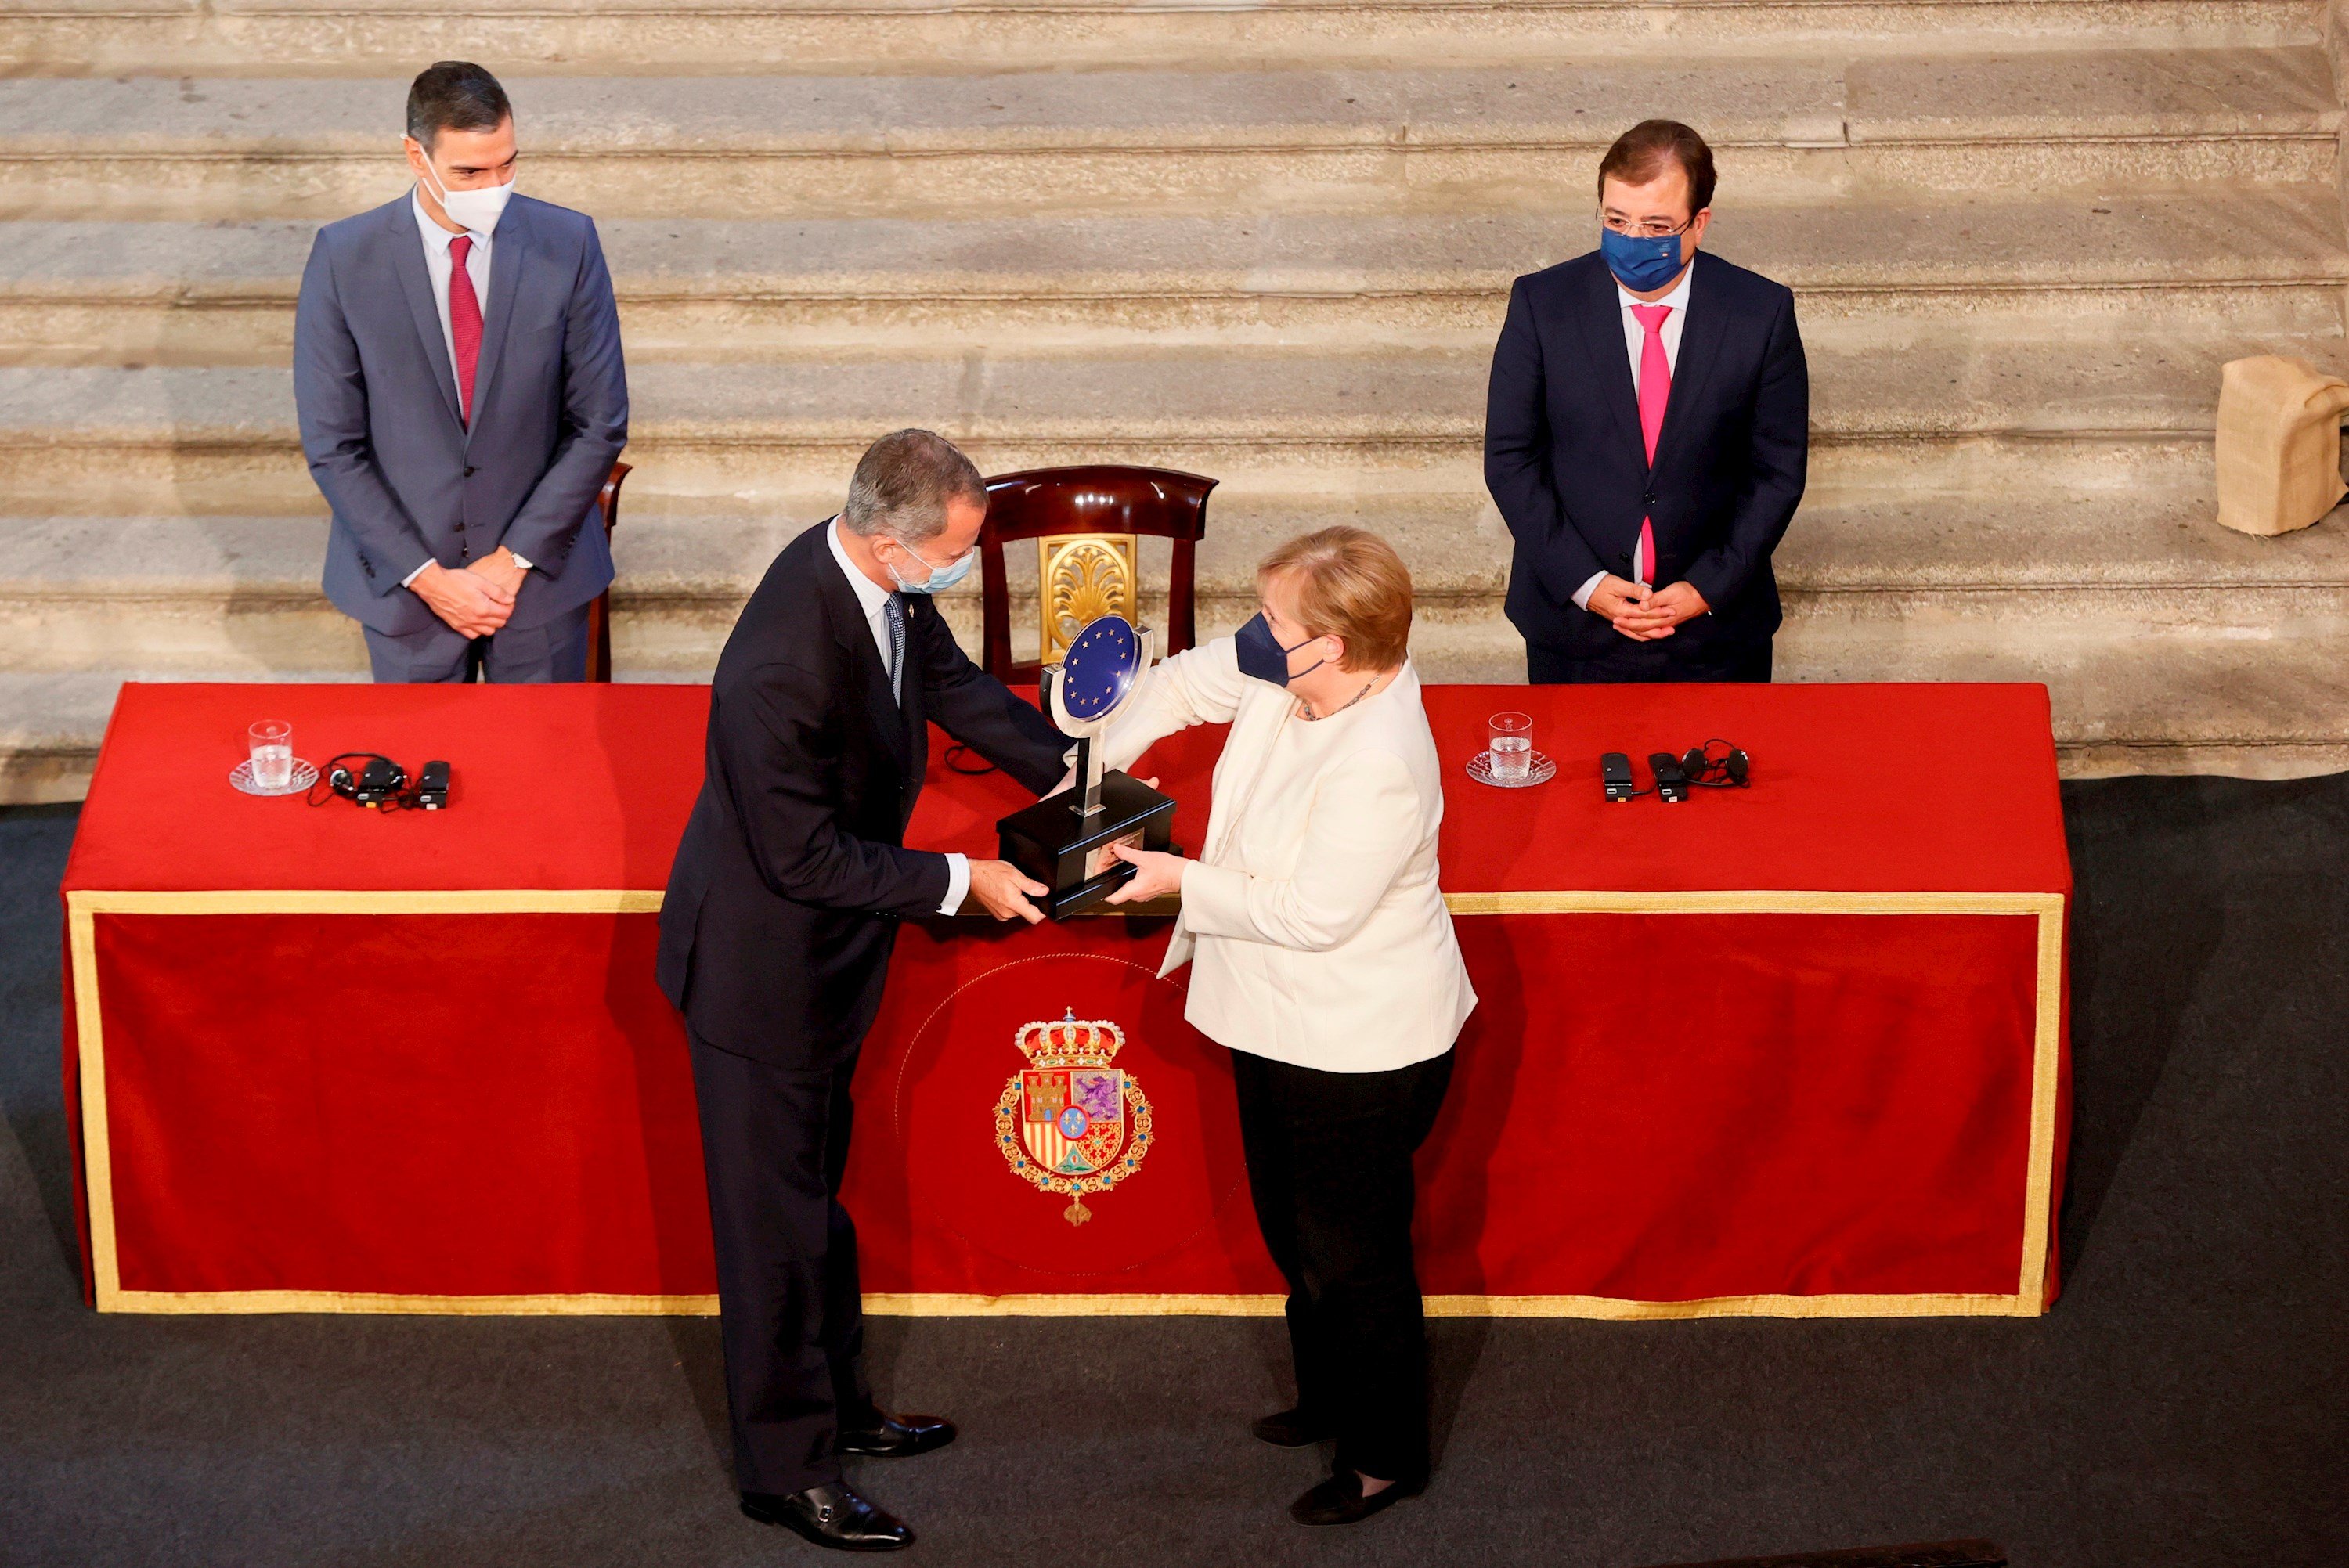 El president del govern, Pedro Sánchez, Angela Merkel amb el rei Felip VI, lliura premis Carles V, Cuacos de Yuste, Càceres - Efe